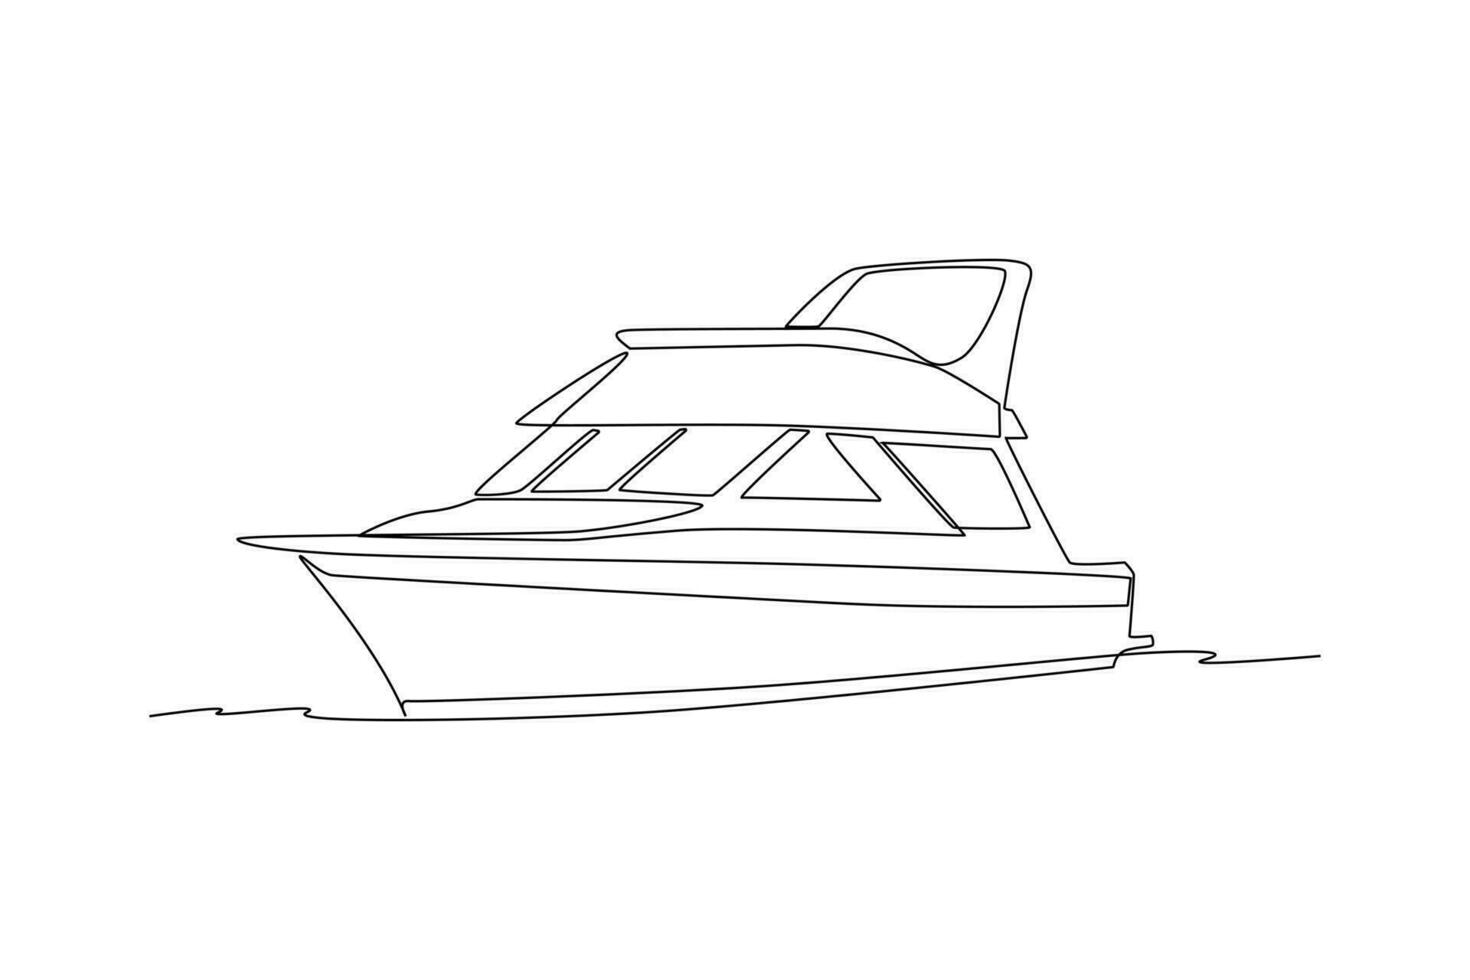 kontinuierlich einer Linie Zeichnung Ozean Reise Transport Konzept. Single Linie zeichnen Design Vektor Grafik Illustration.